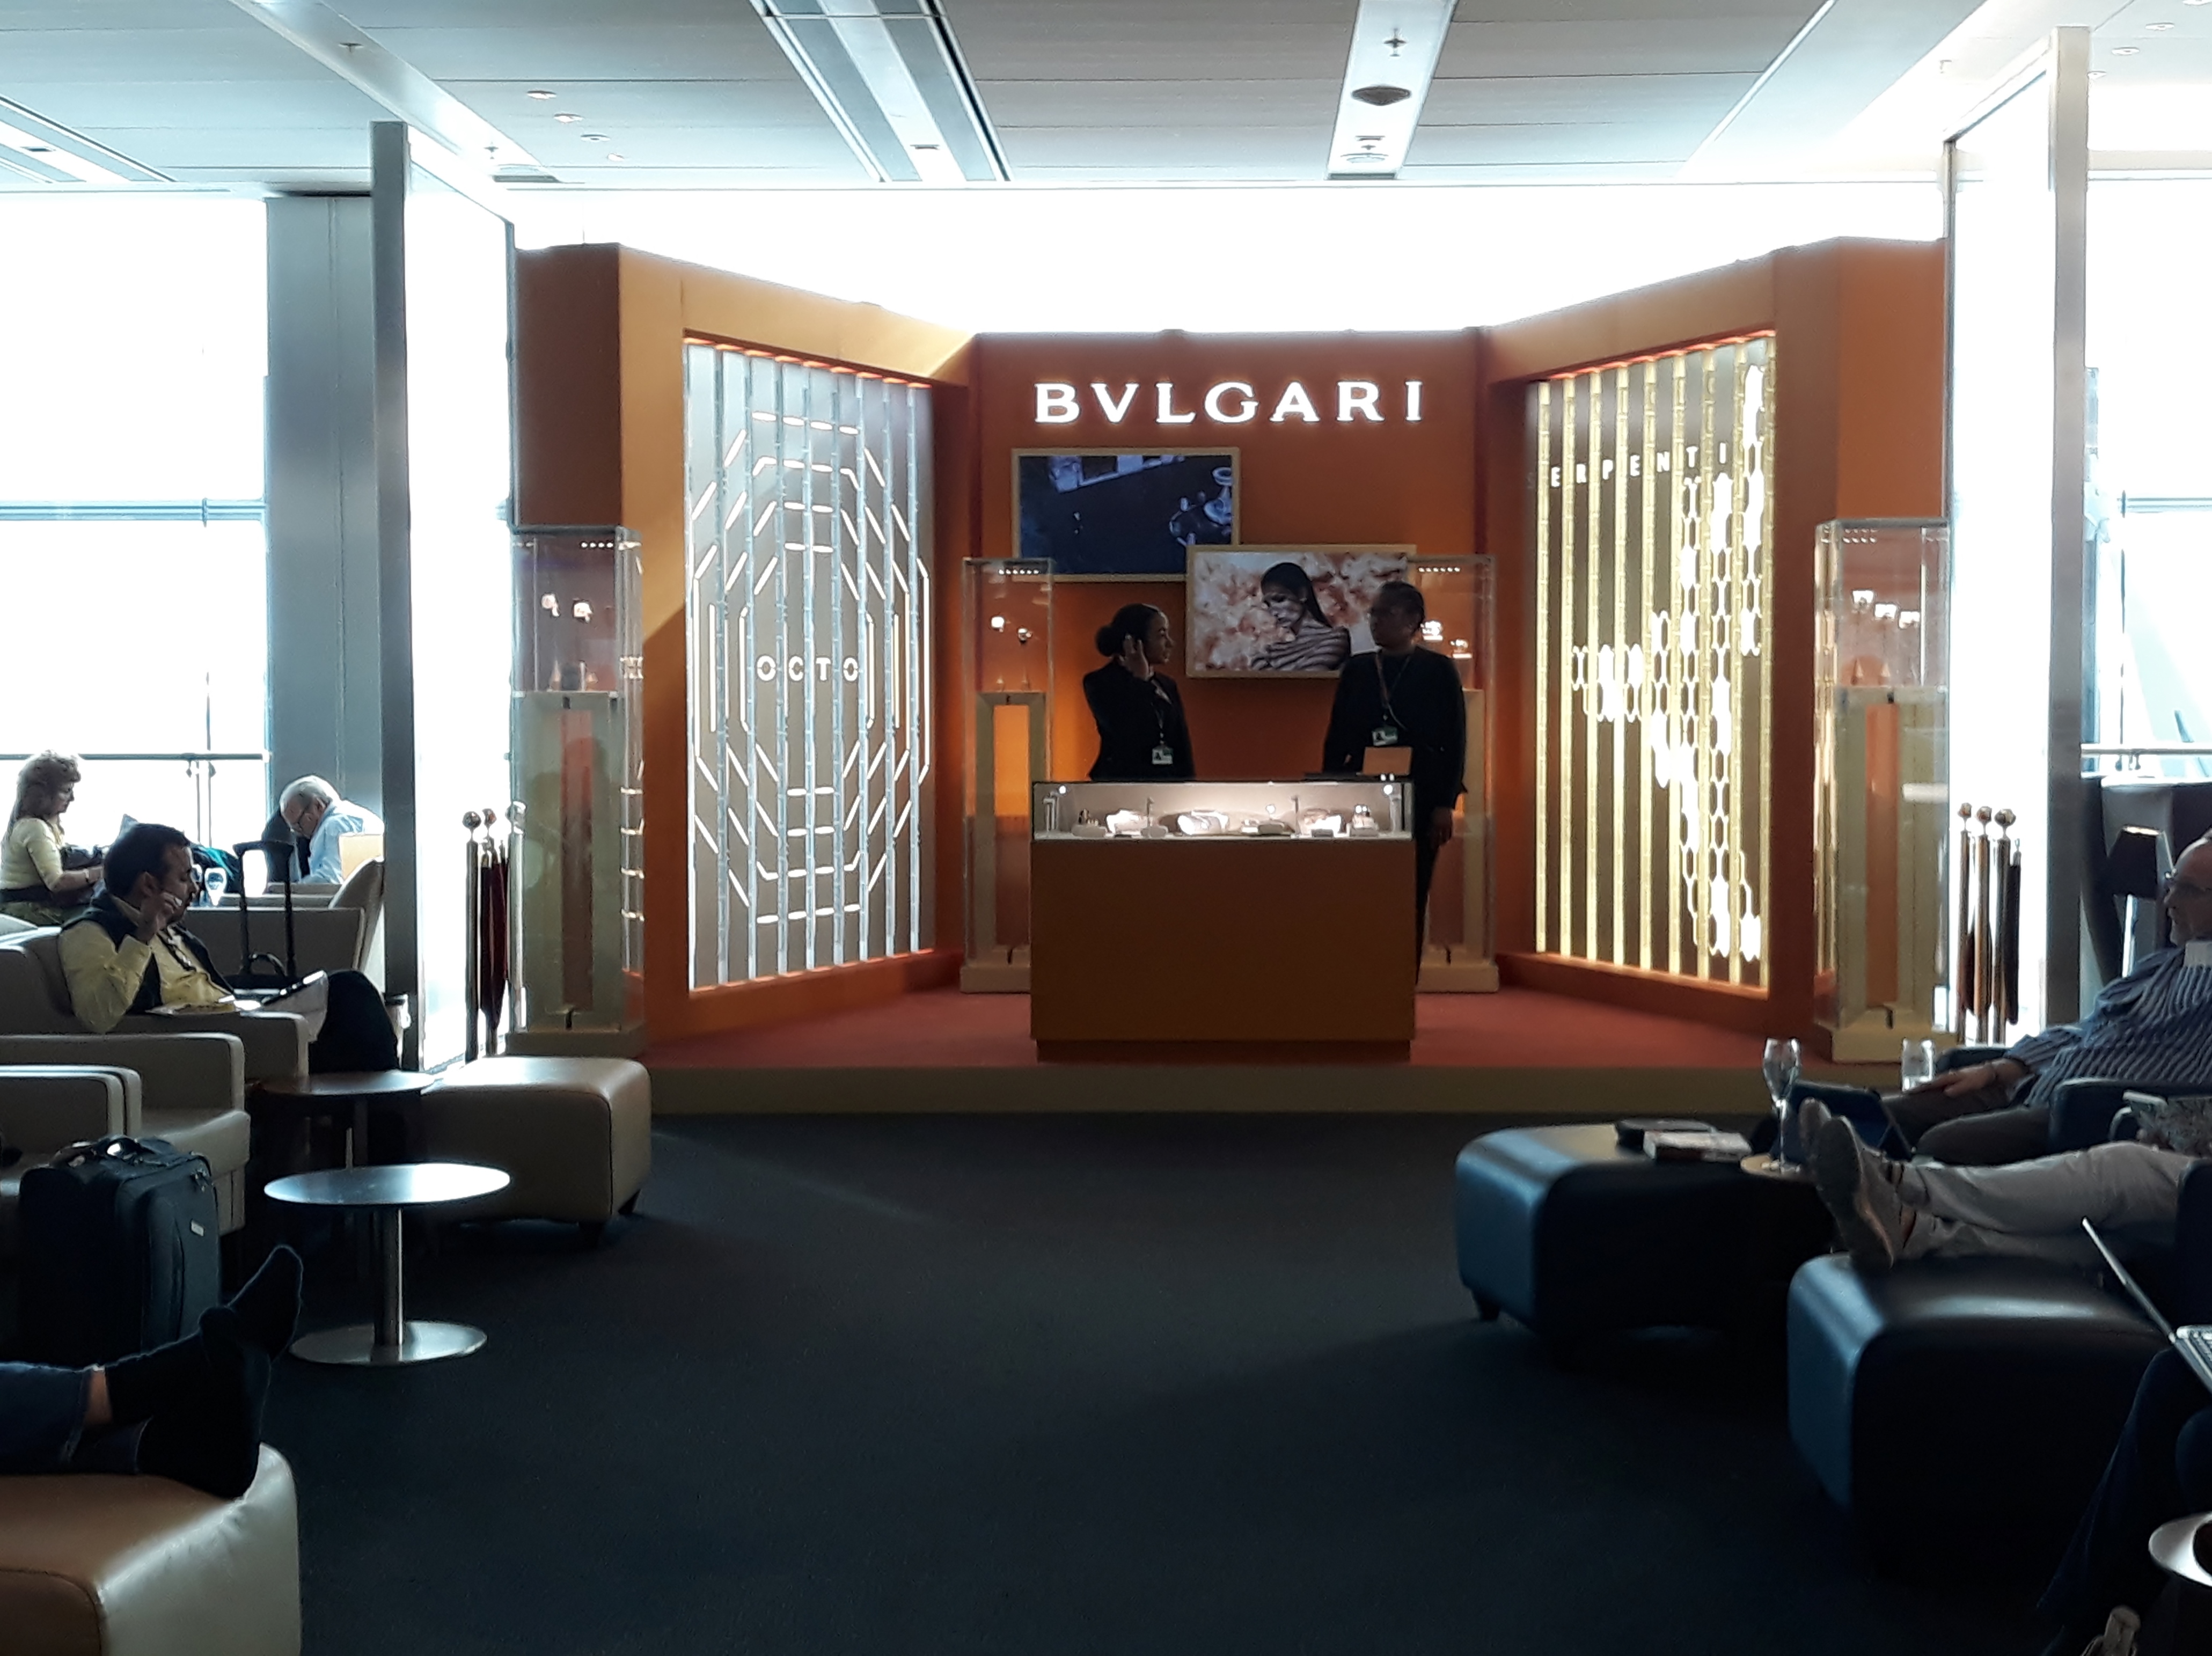 Bvlgari pop-up stand in the British Airways Galleries First Lounge |  